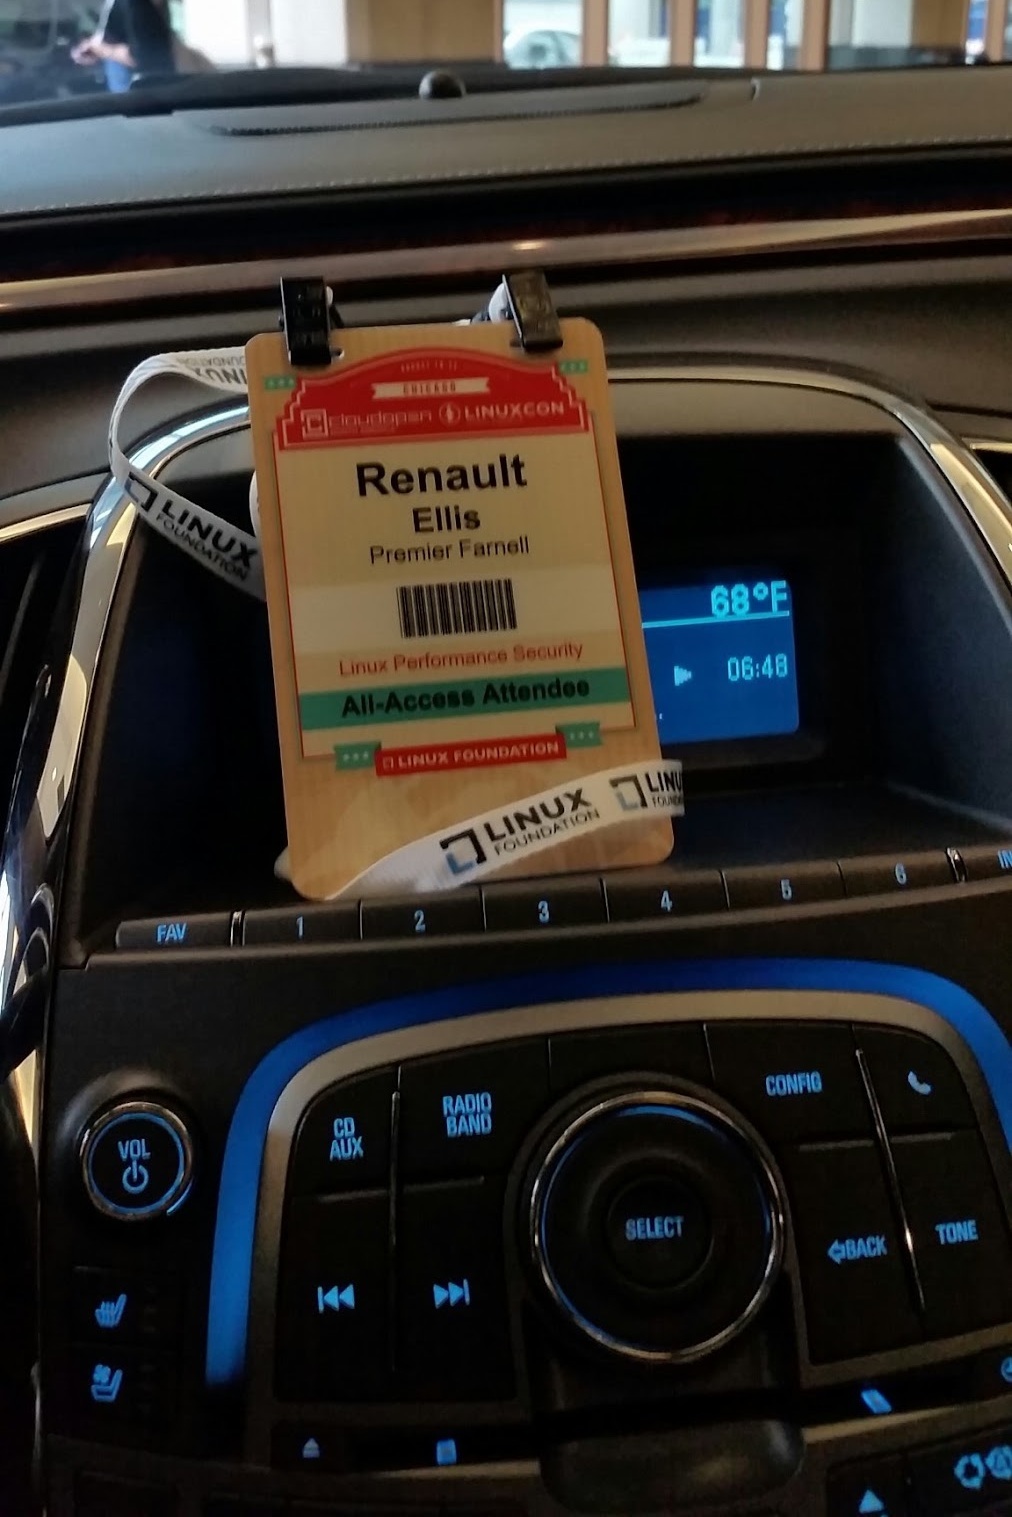 Renault Ellis badge